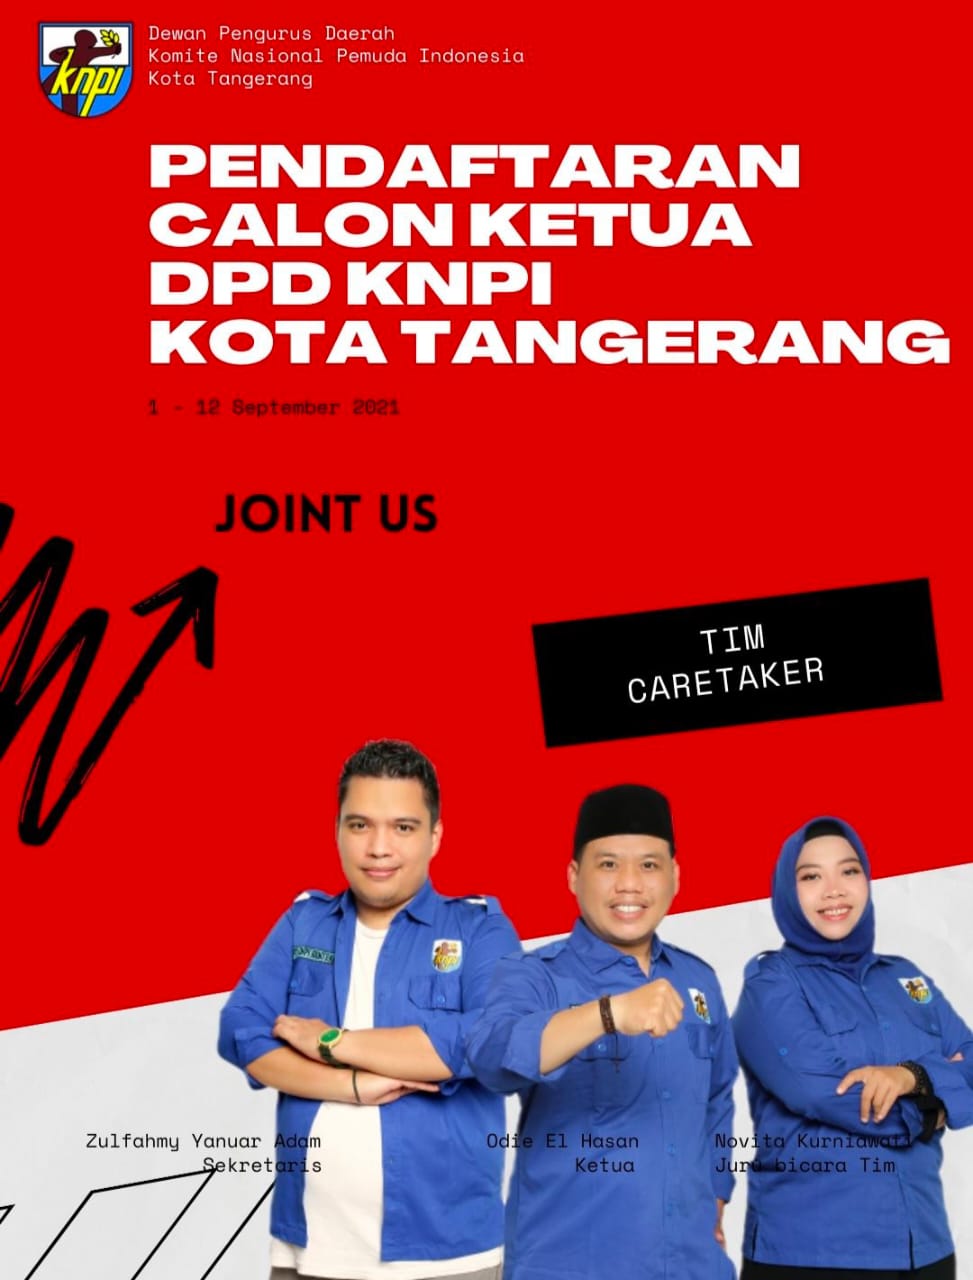 Gambar Pendaftaran Calon Ketua DPD KNPI Kota Tangerang Dibuka Mulai Hari Ini 33